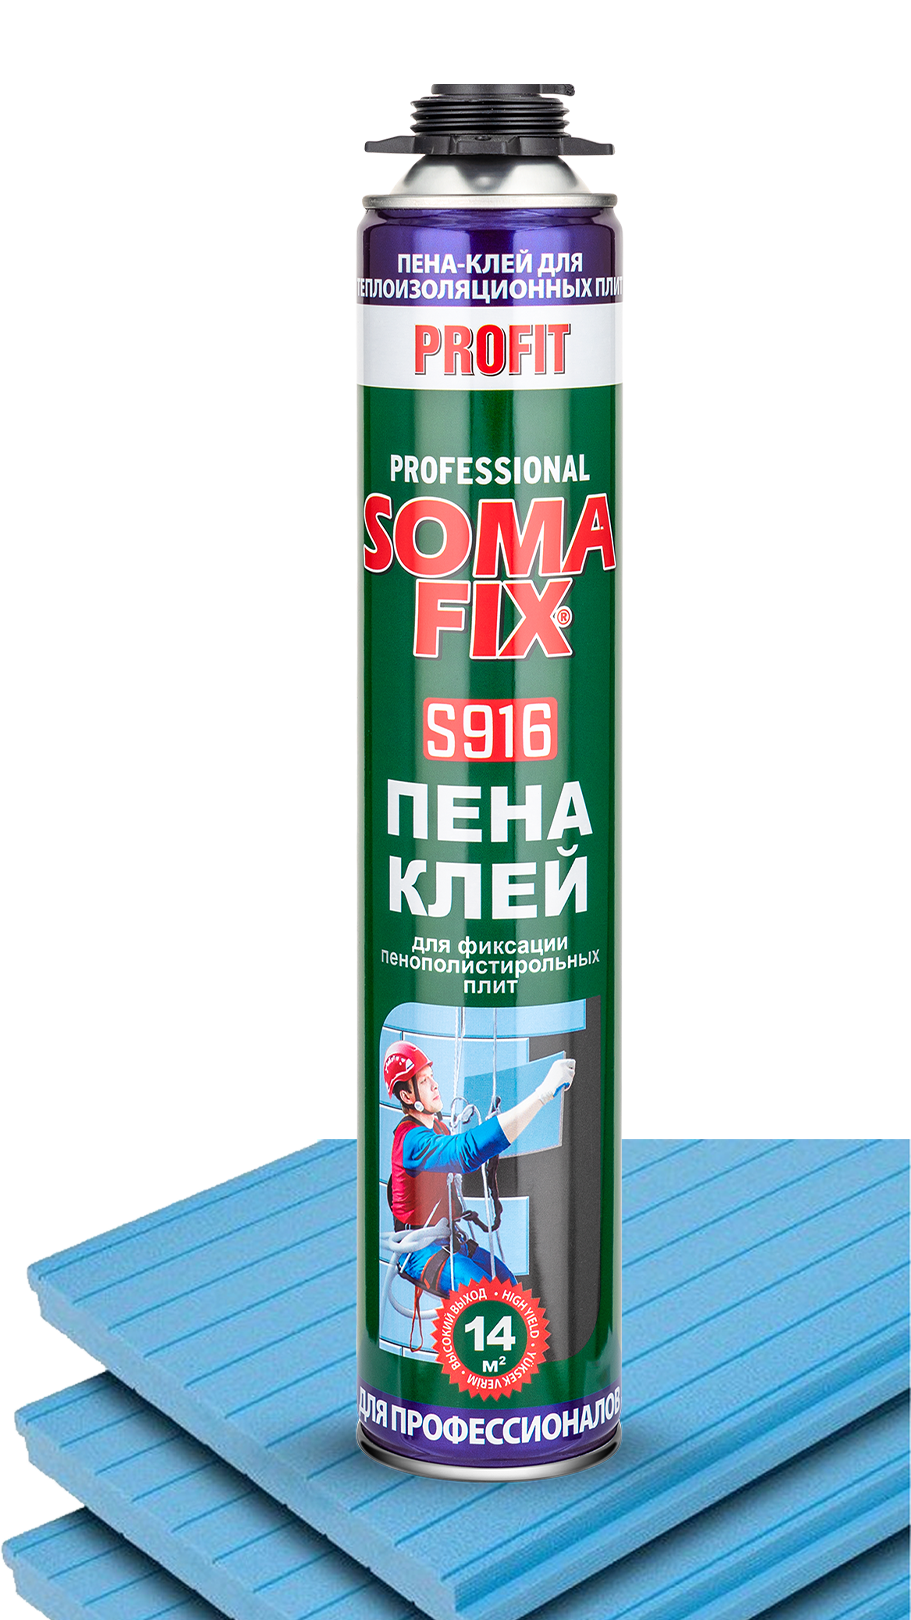 Пена-клей монтажная профессиональная SOMA FIX для теплоизоляционных плит S916. Купить от производителя по отличной цене